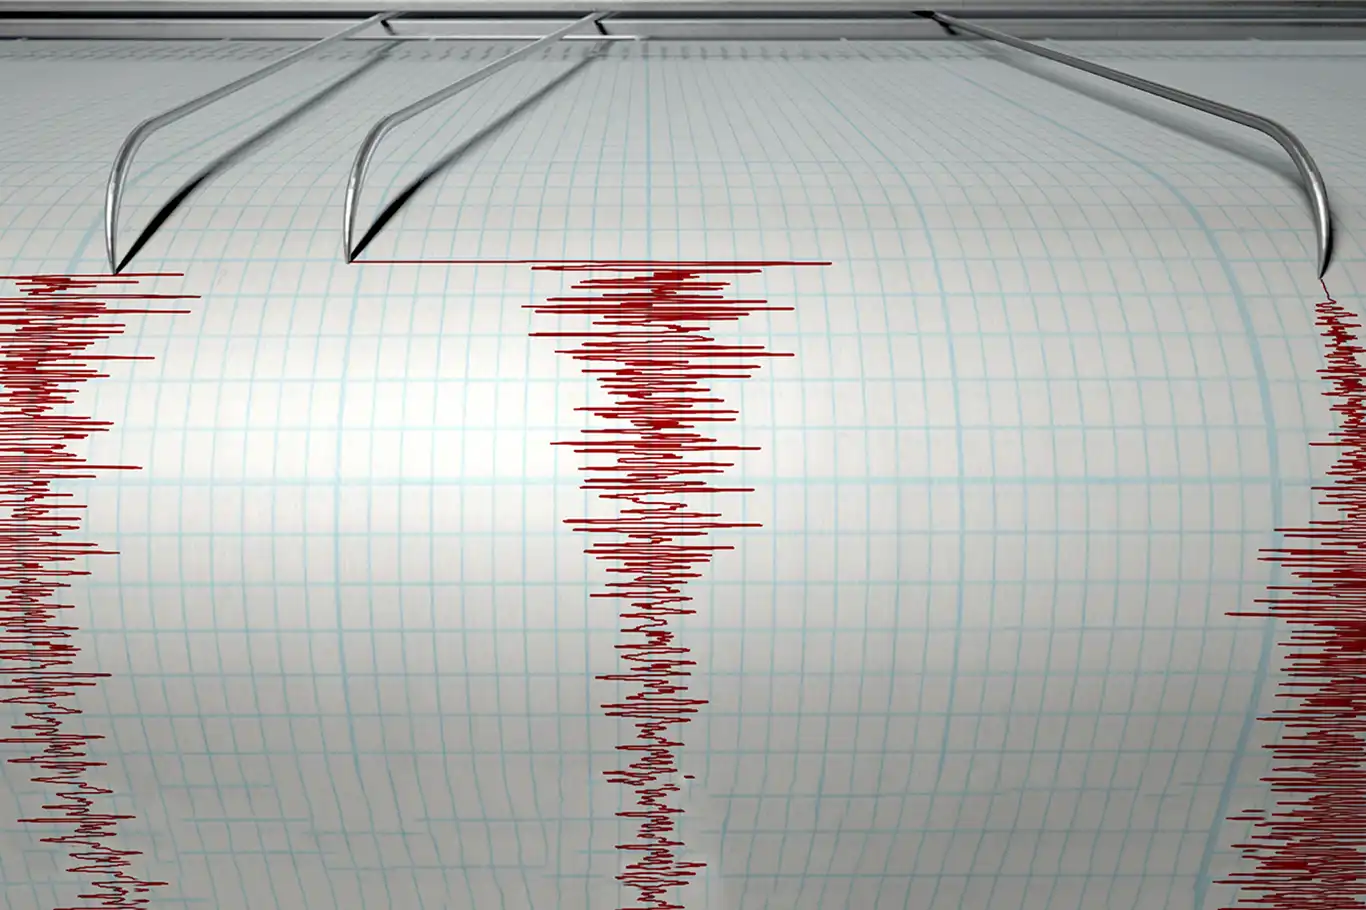 4.2 magnitude earthquake strikes Aegean Sea off Turkish coast